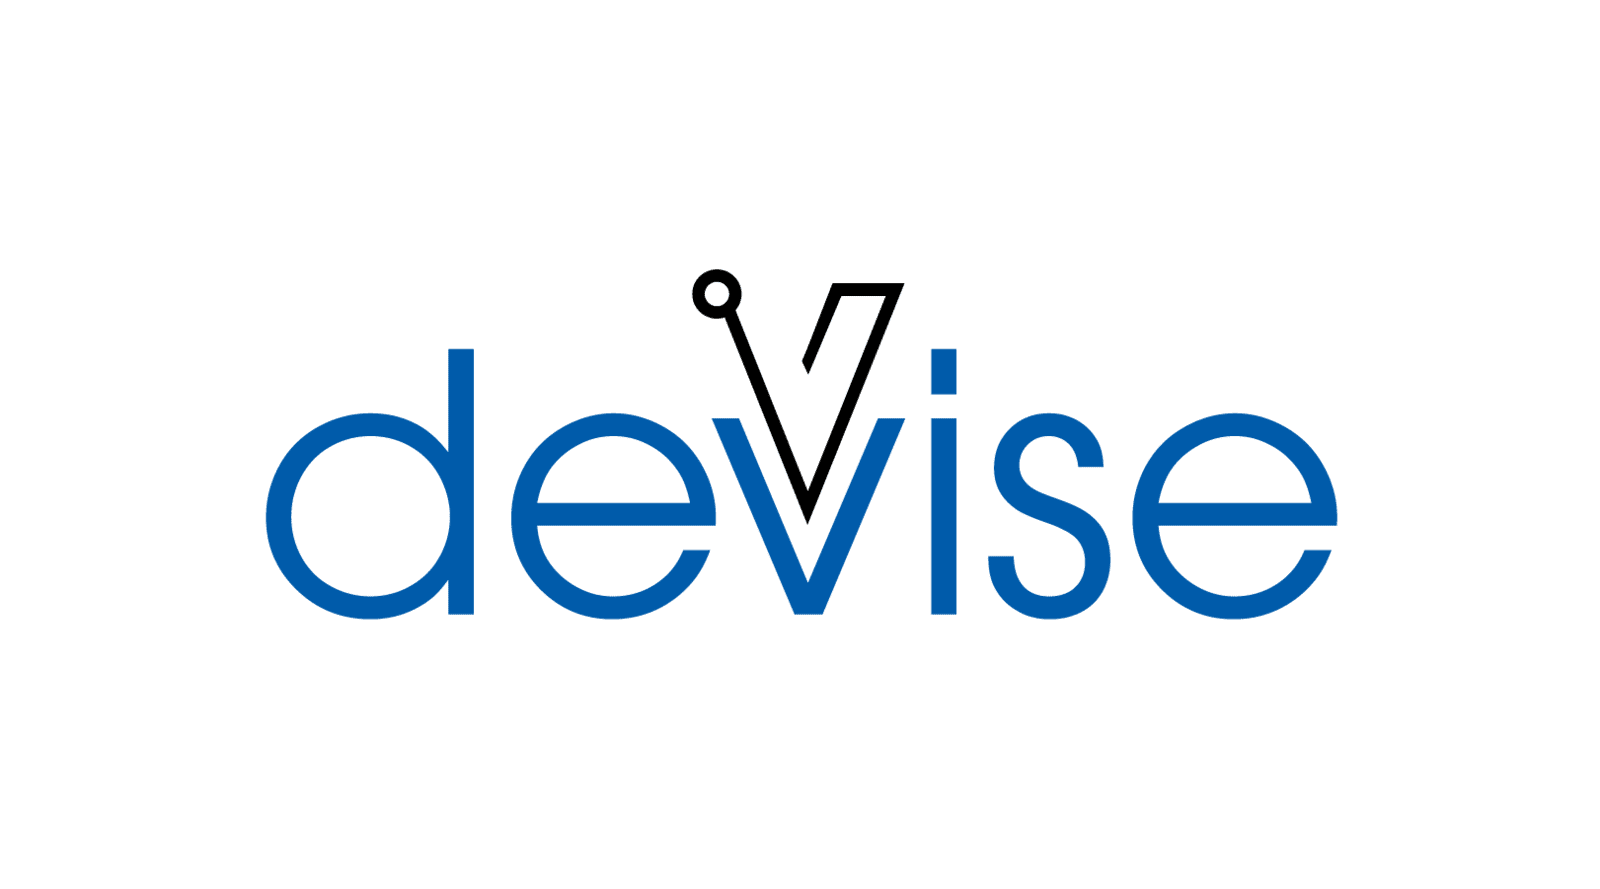 DEVISE ELECTRONICS - Your Development Partner Since 2013